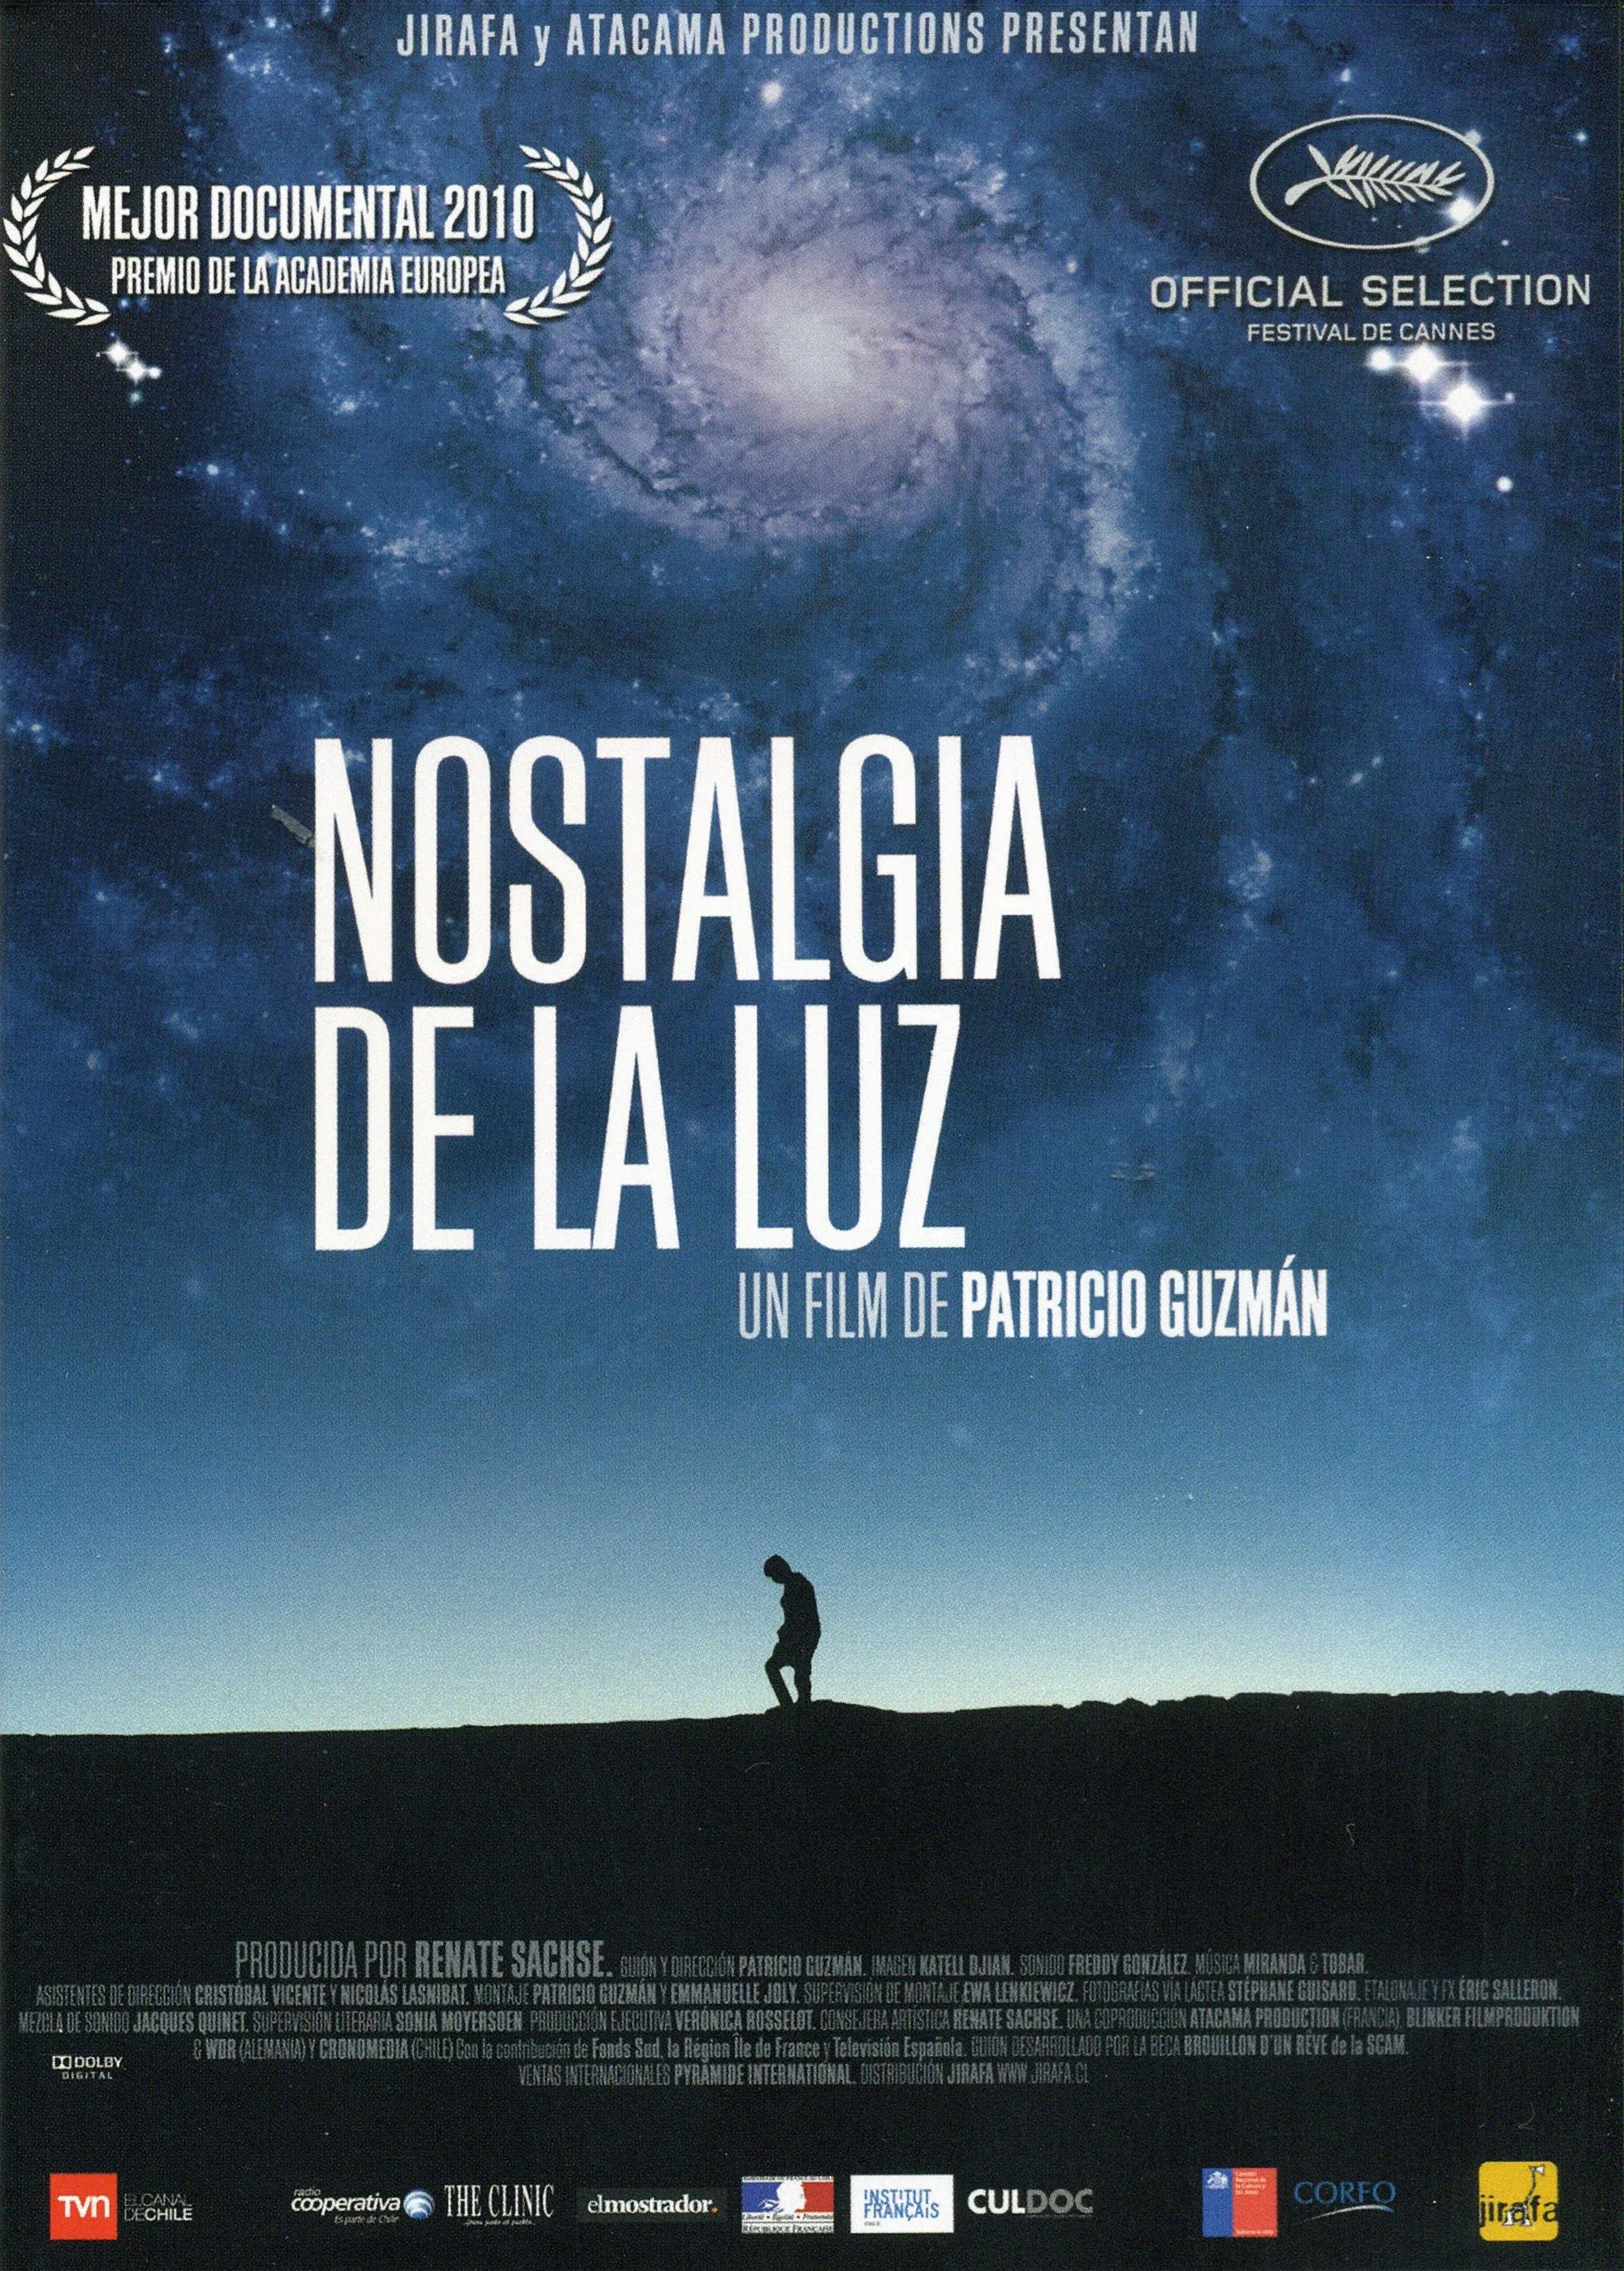 Cartel de Nostalgia de la luz, Patricio Guzmán, 2010.